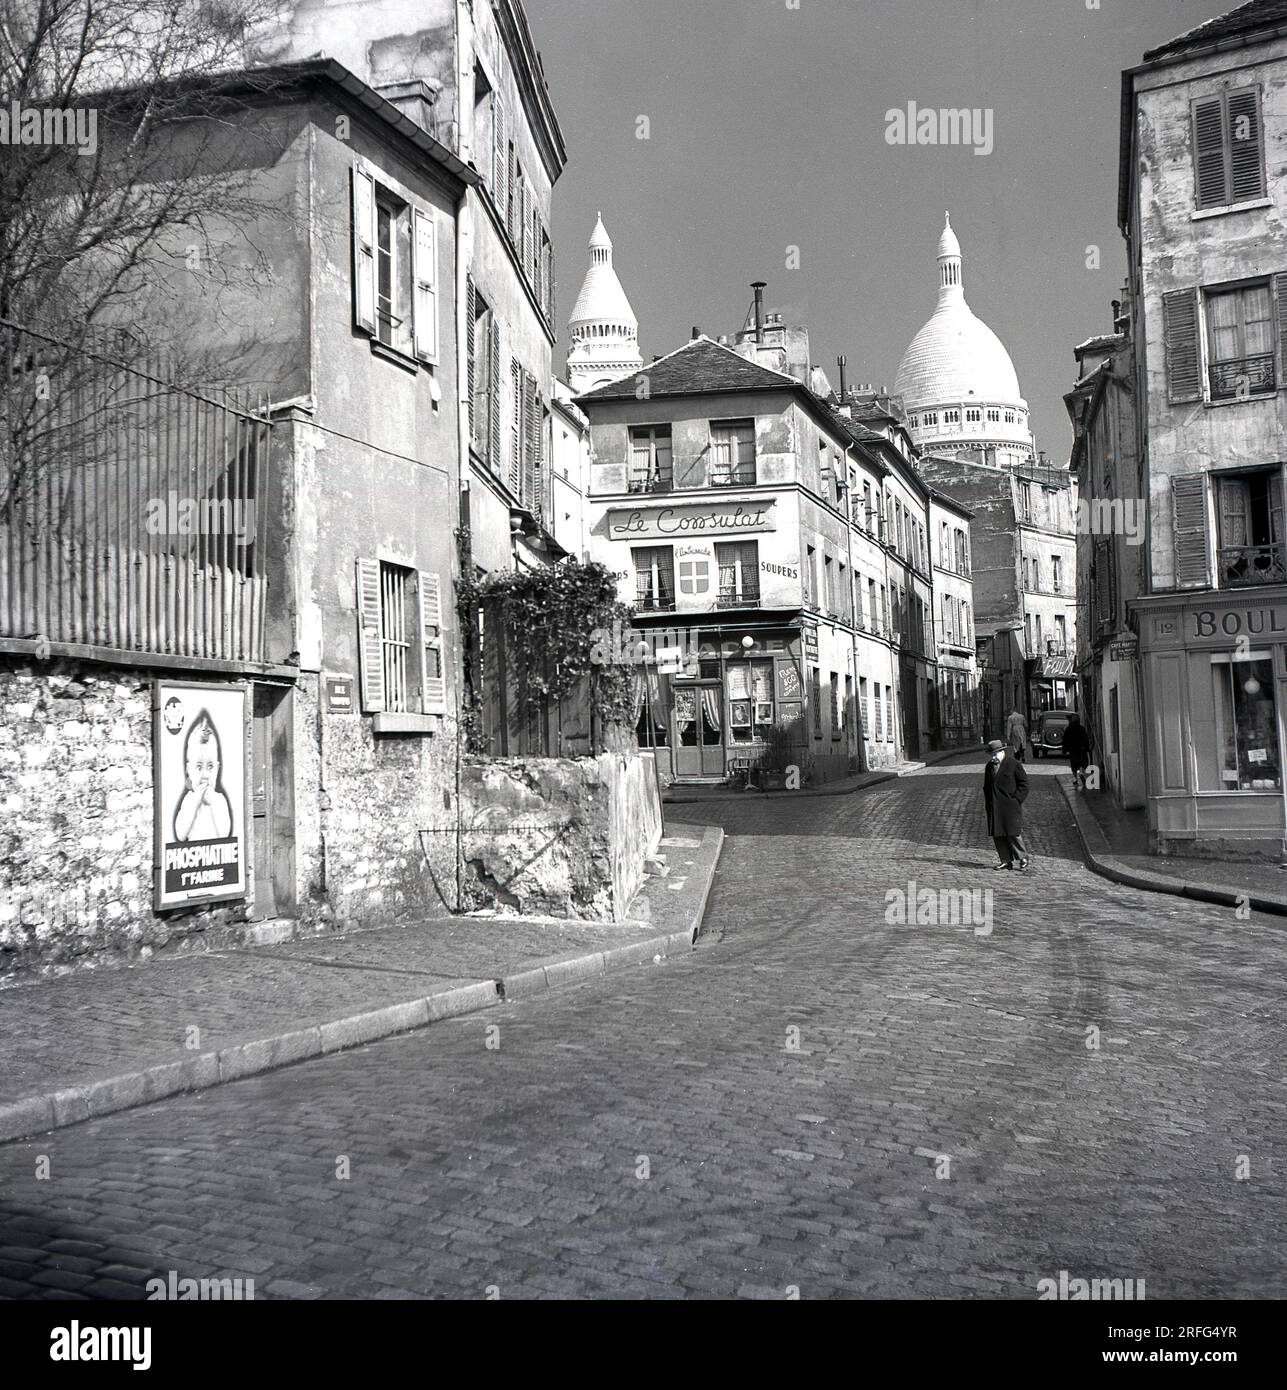 Années 1950, Paris, France, un homme marchant acorss une rue pavée dans le quartier Montmartre de la ville parisienne, célèbre pour ses artistes de rue et son église, le Sacré coeur. La photo montre les rue des Sales et le restaurant, 'le Consulatt' avec les dômes du Sacré-cœur en arrière-plan. Banque D'Images